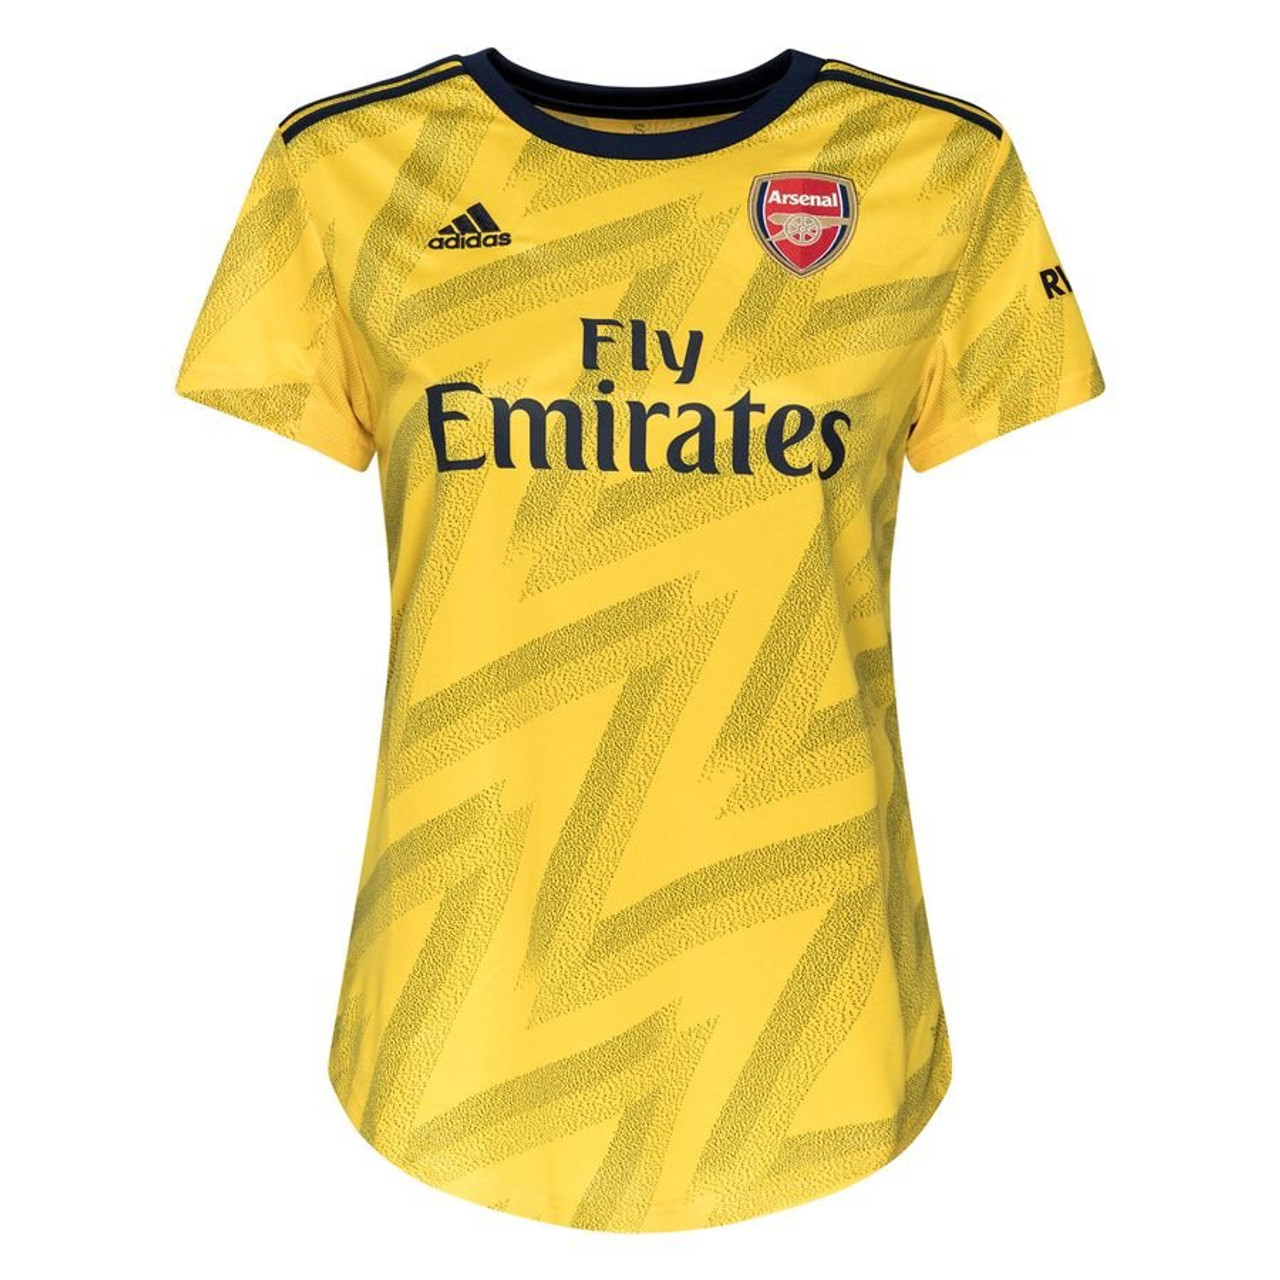 arsenal 2019 jersey